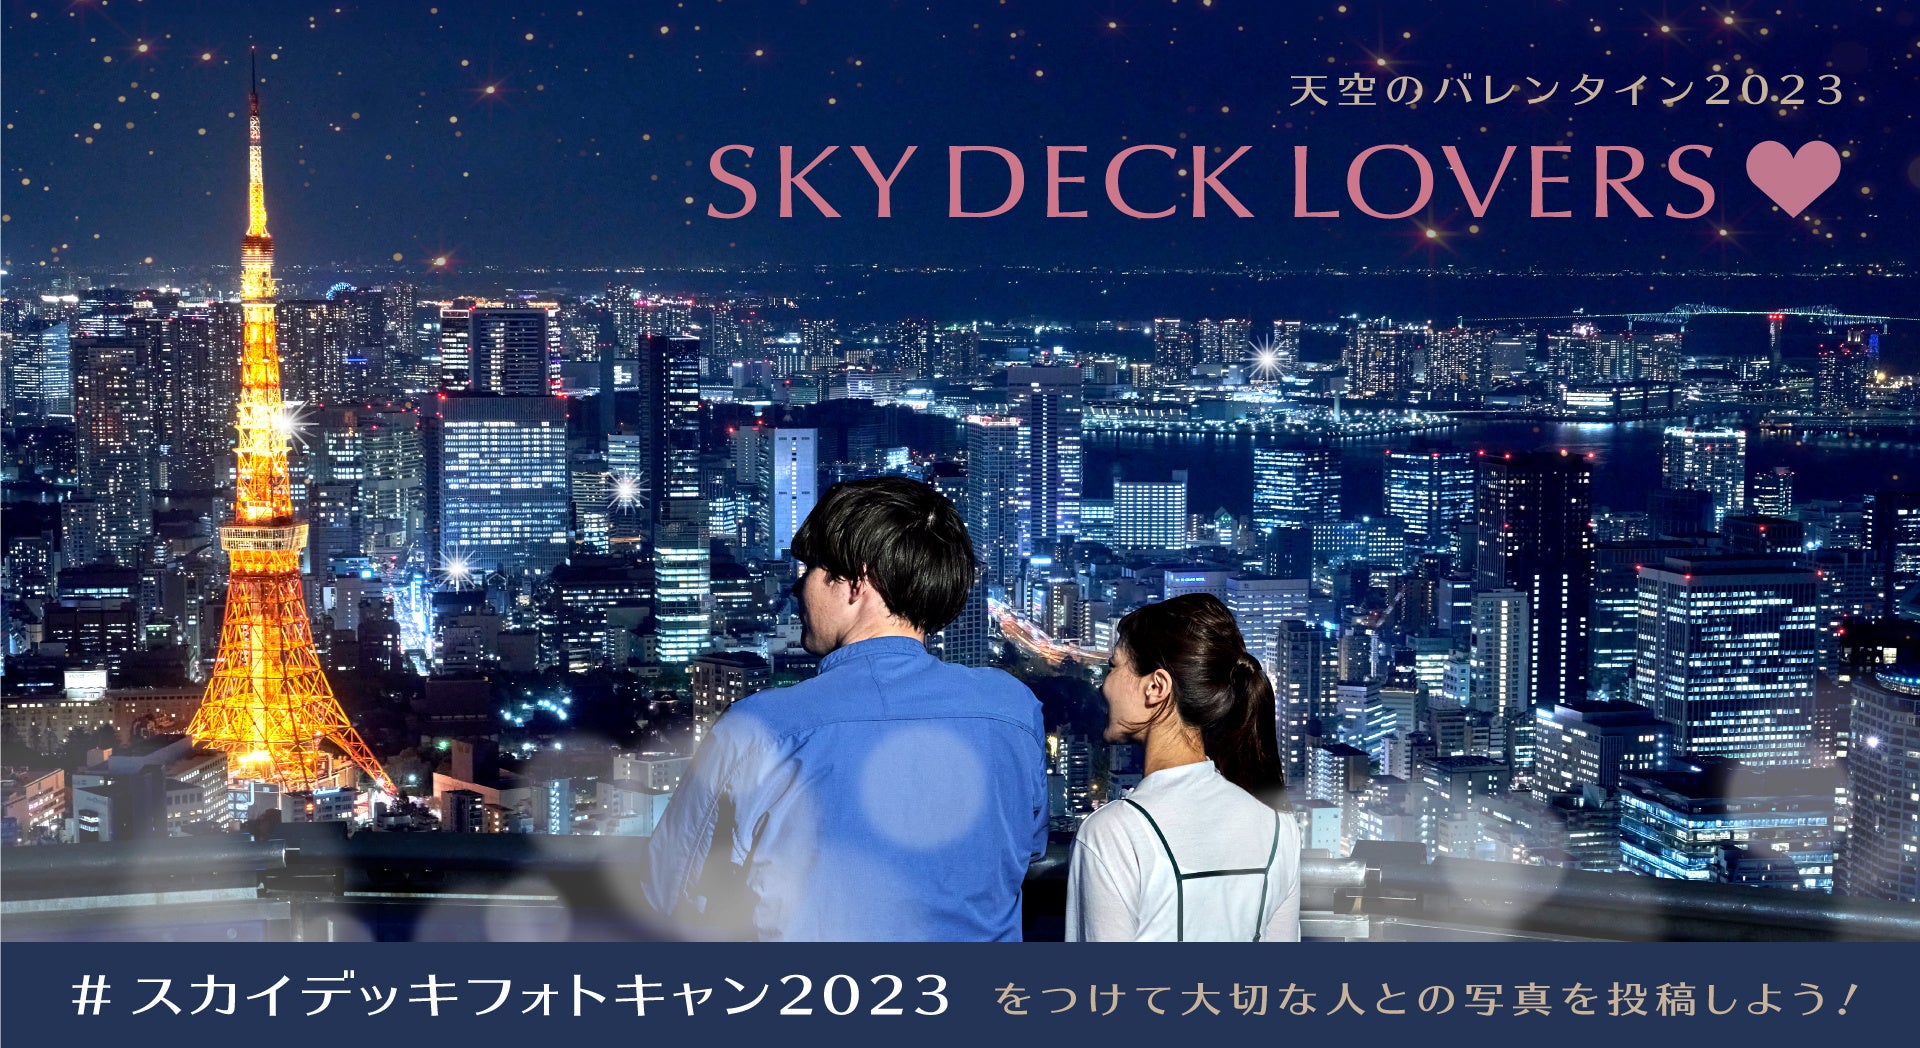 六本木ヒルズ展望台 「天空のバレンタイン2023」開催